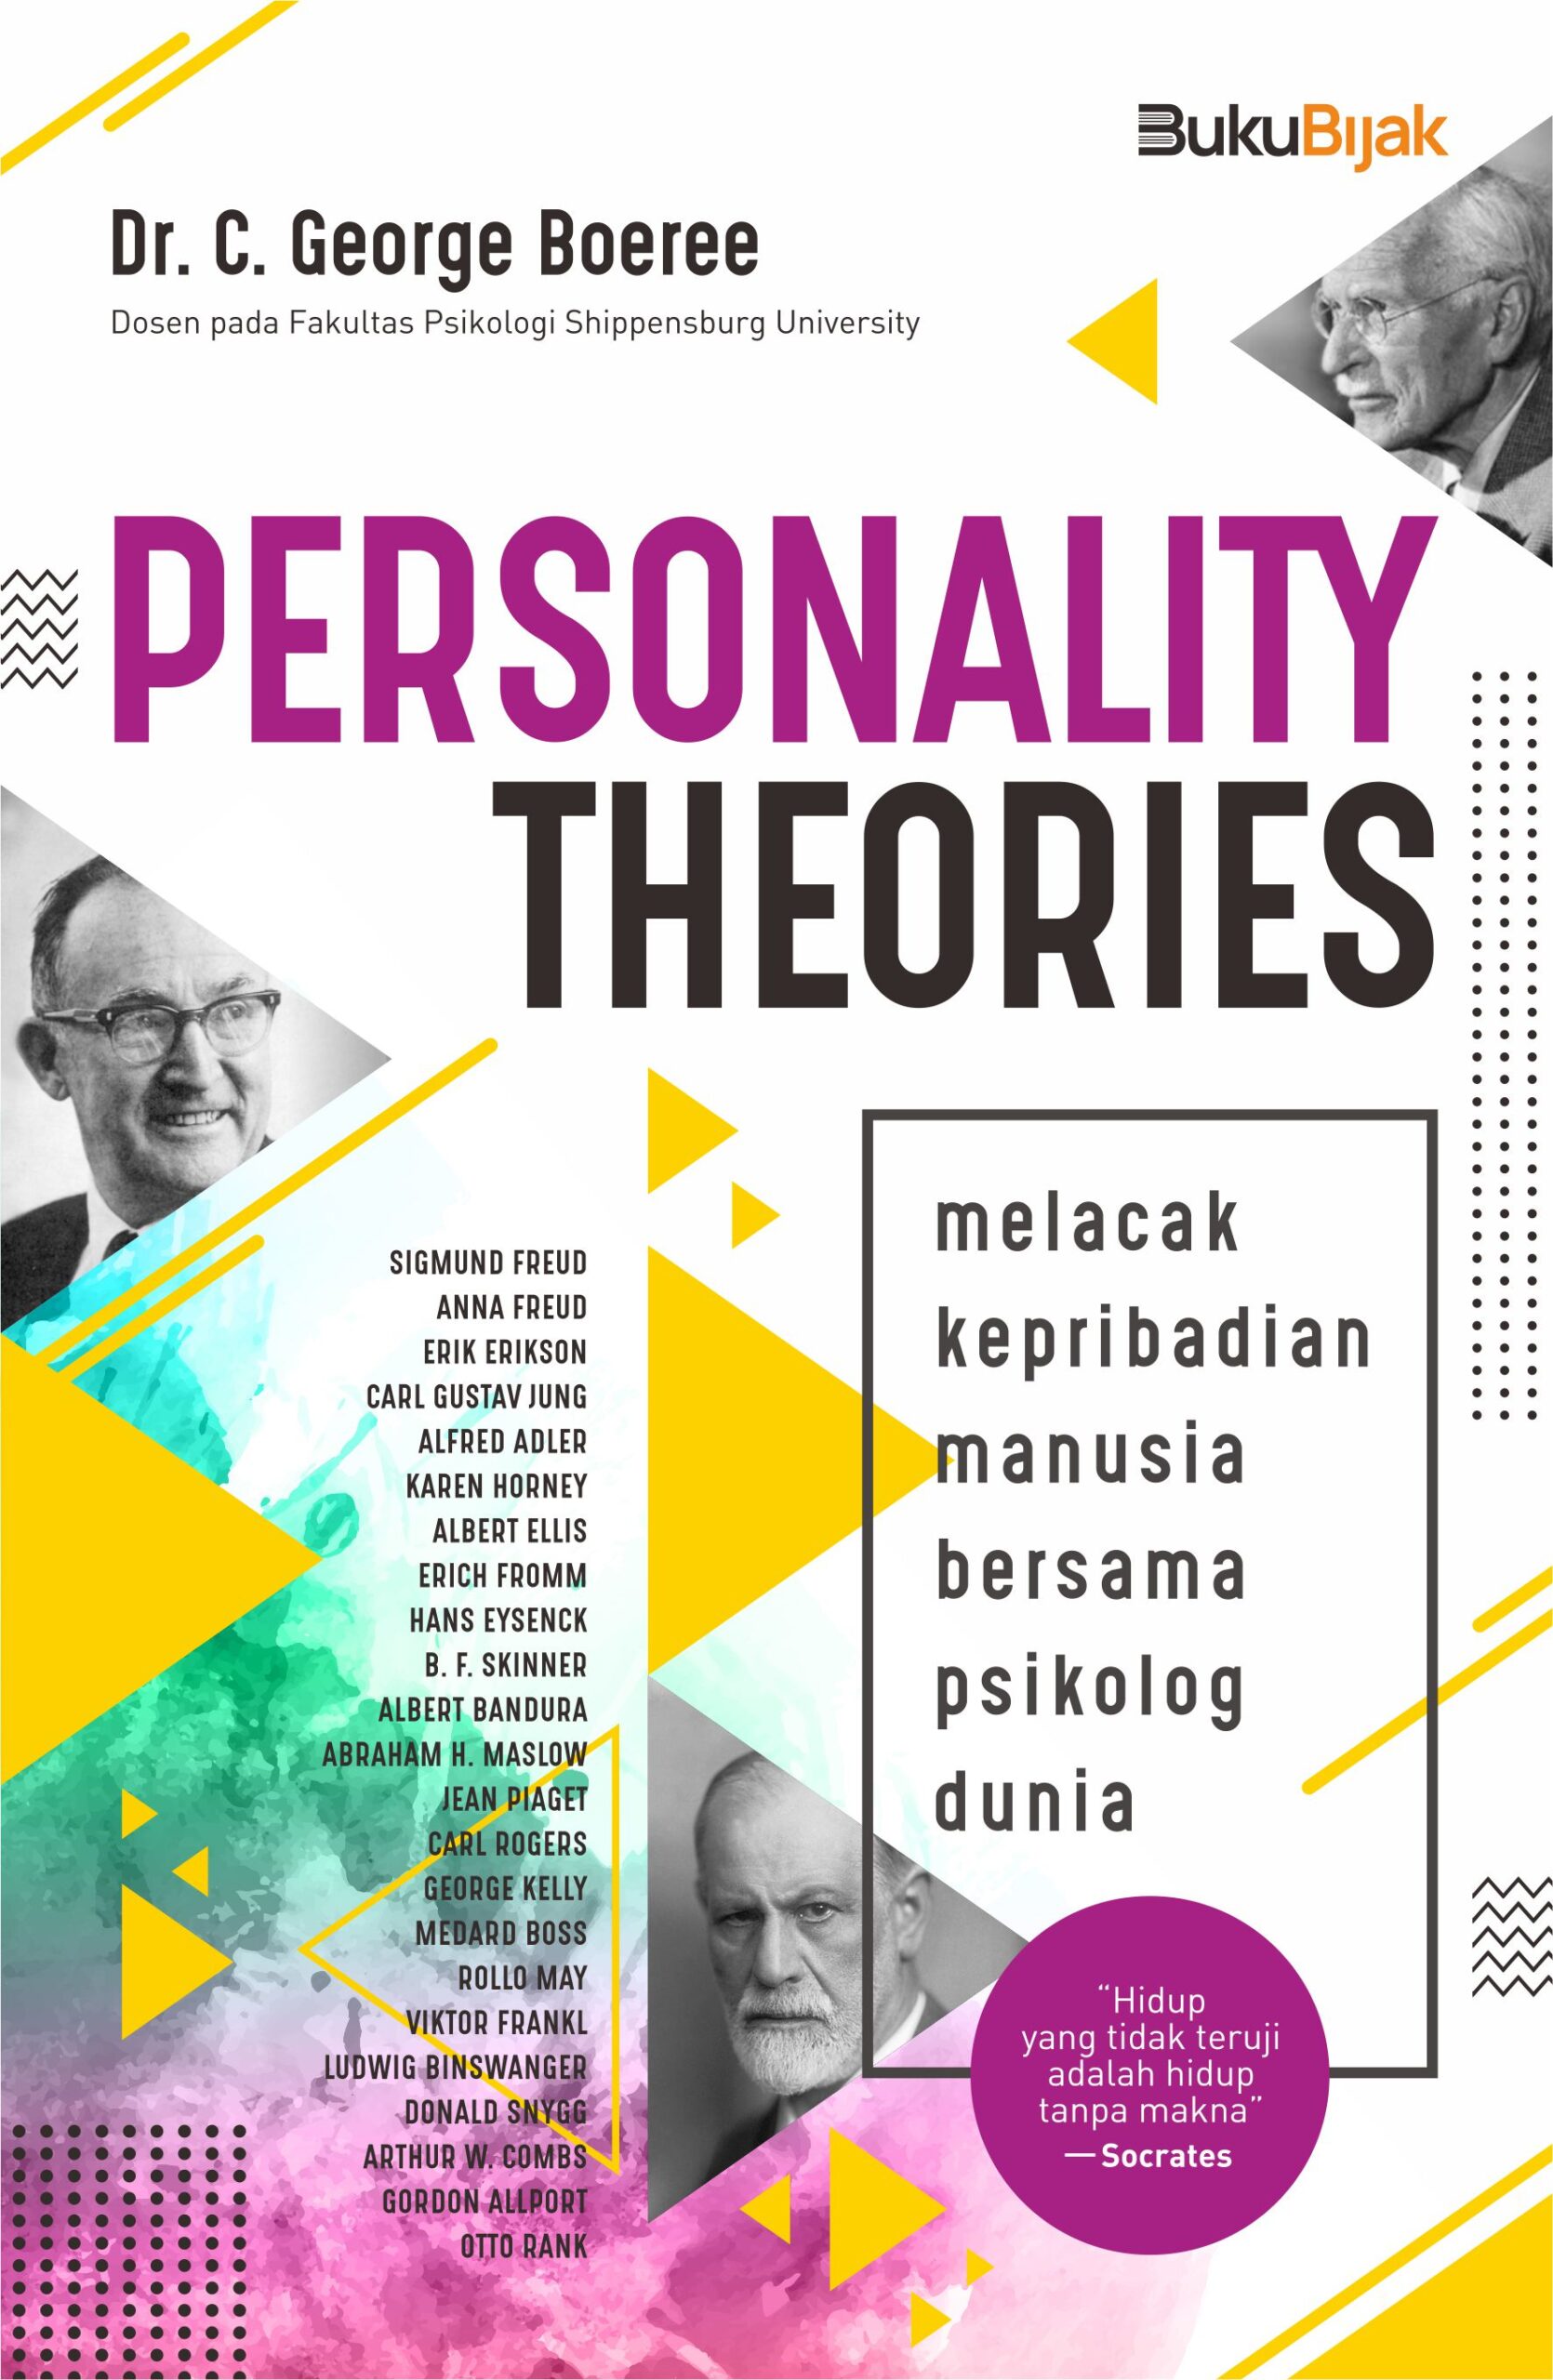 Personality theories :  melacak kepribadian manusia bersama psikolog dunia